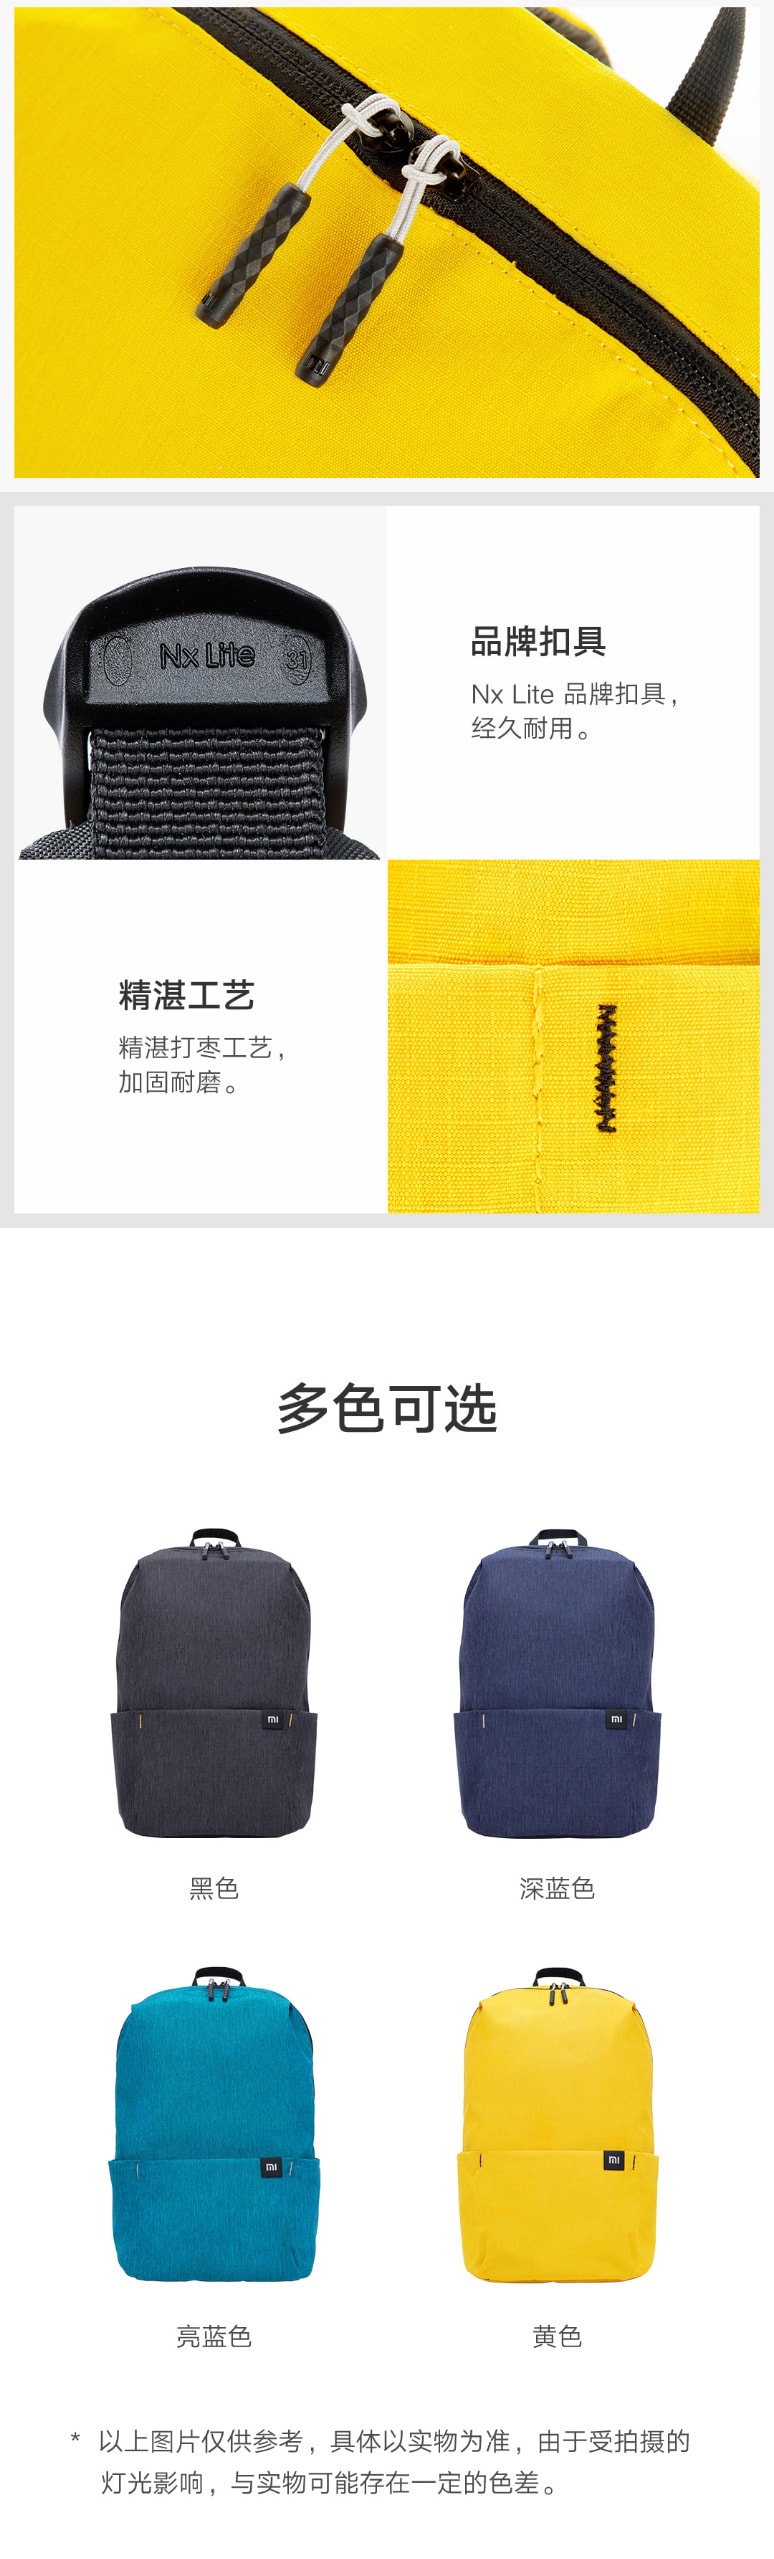 【中国直邮】小米有品 小米炫彩小背包 10L 亮蓝色